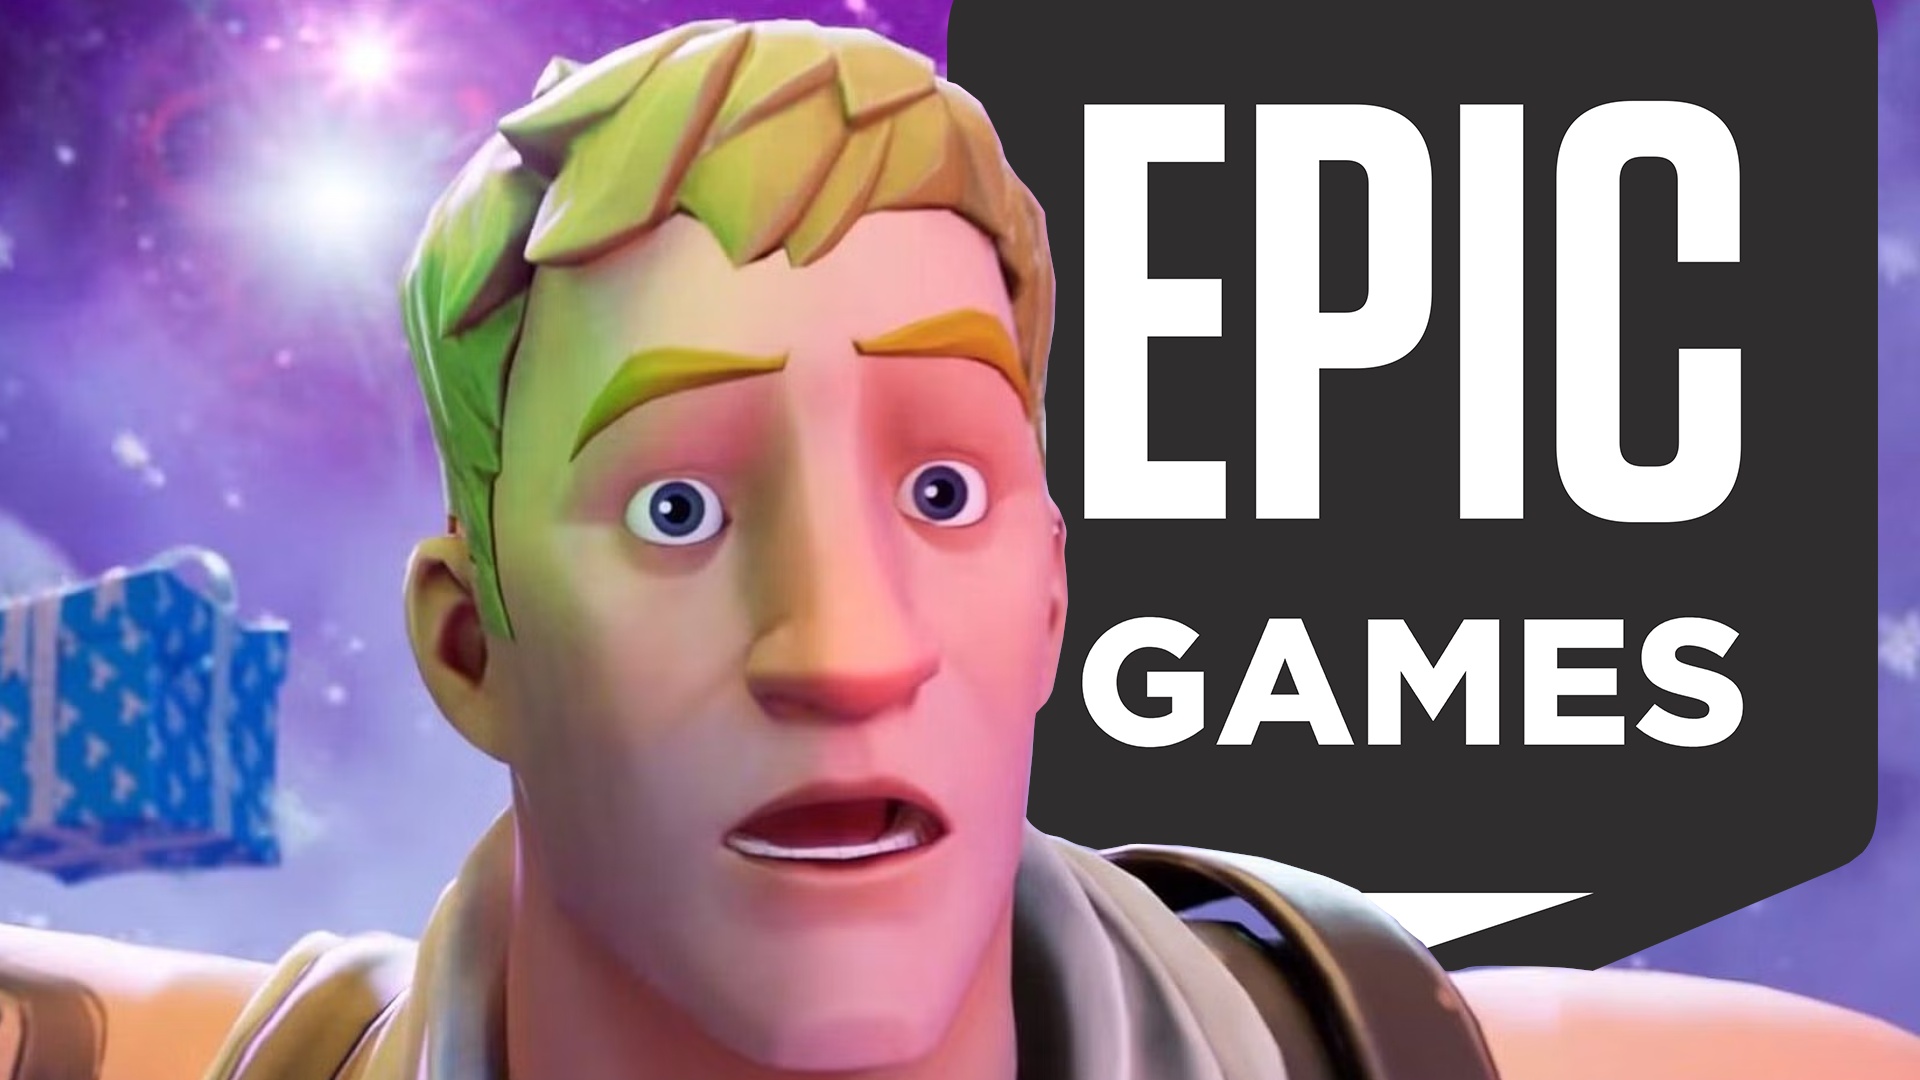 #Epic Games: Das Unternehmen hinter Fortnite entlässt plötzlich über 800 Angestellte